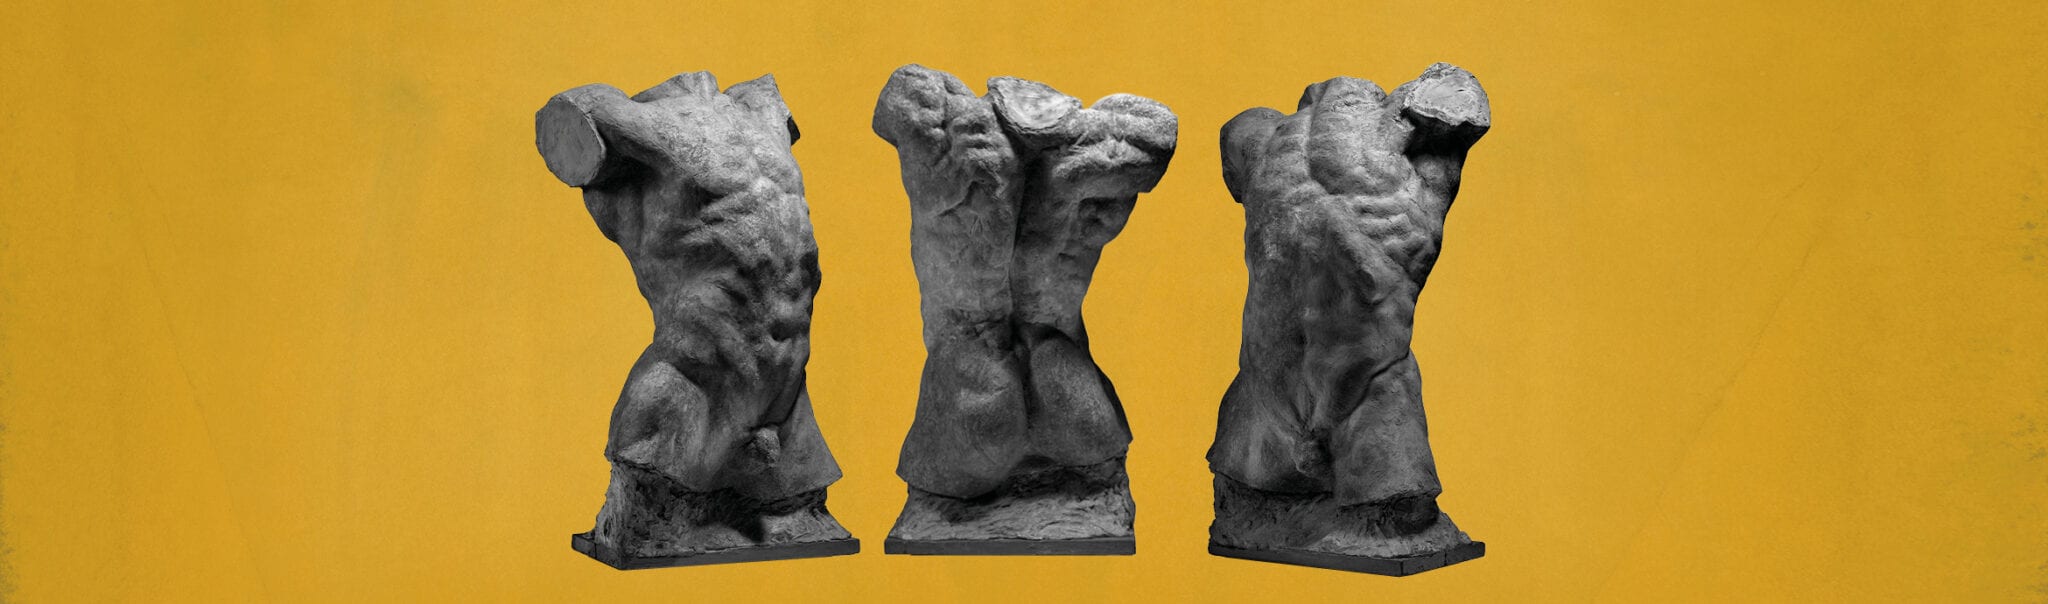 Auguste Rodin - Forskydninger glyptoteket